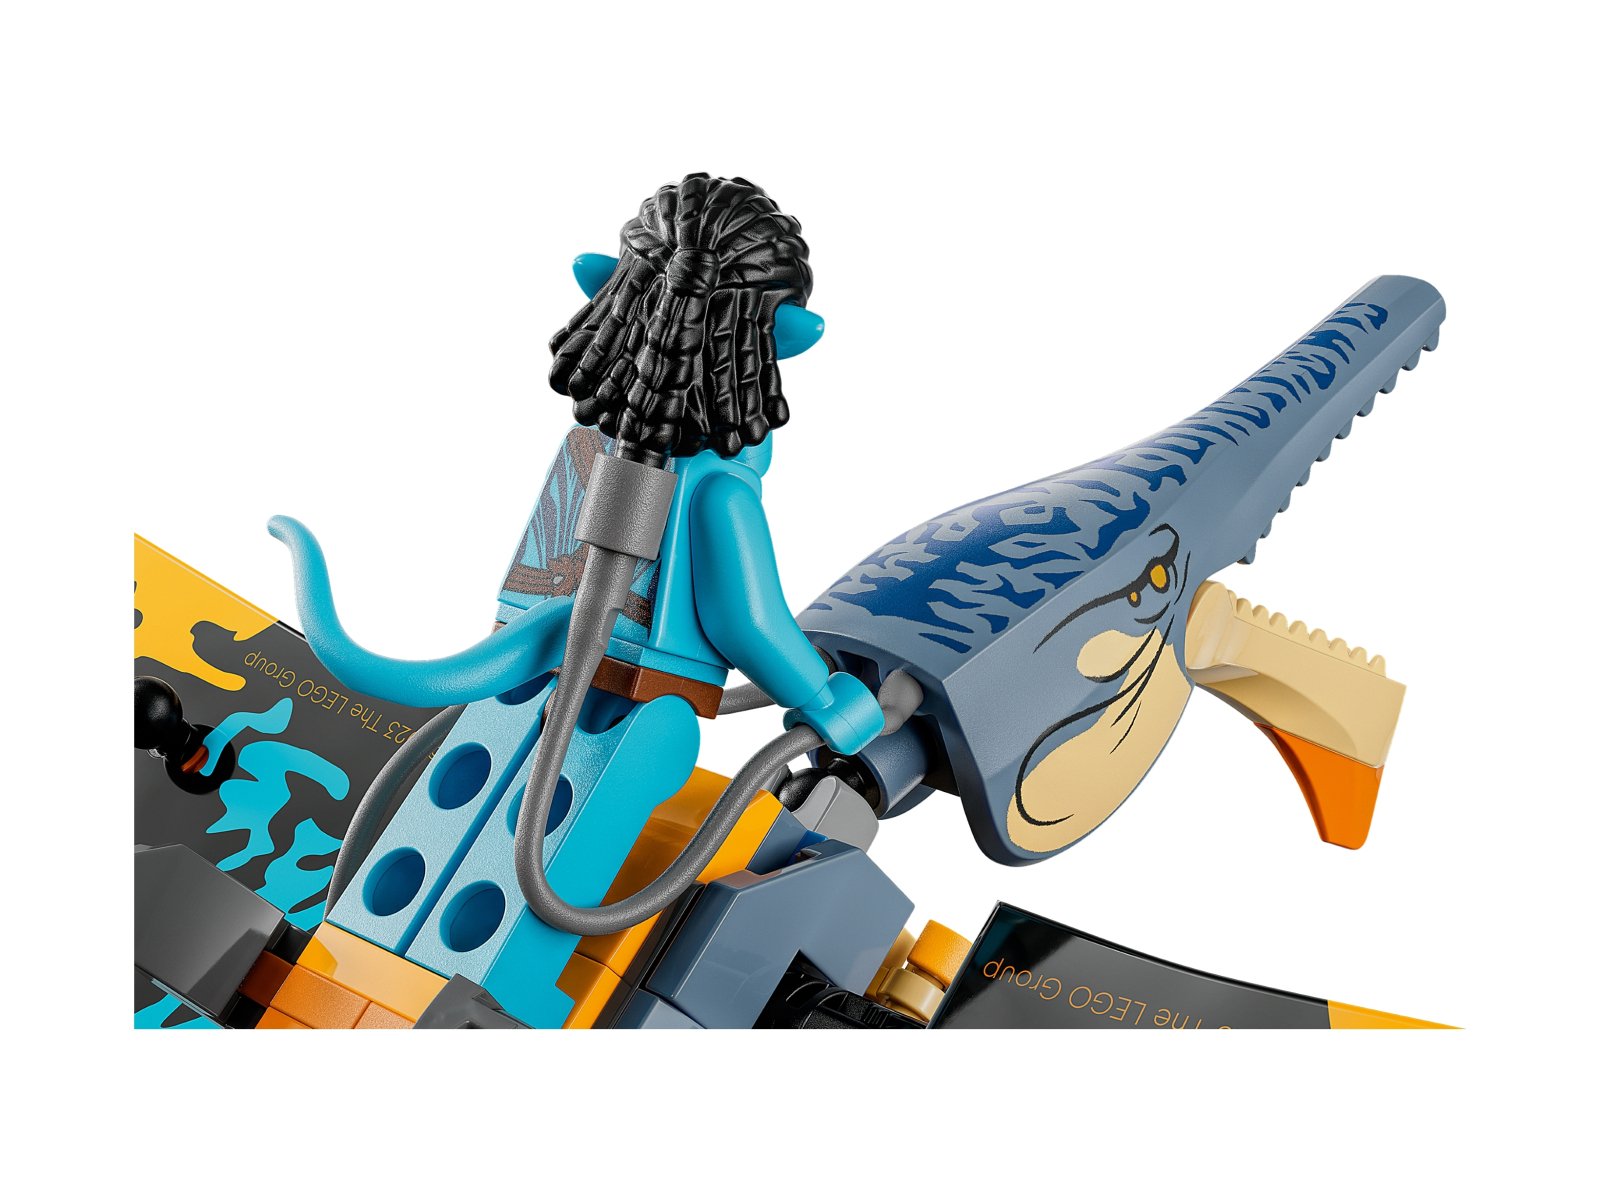 LEGO Avatar Przygoda ze skimwingiem 75576